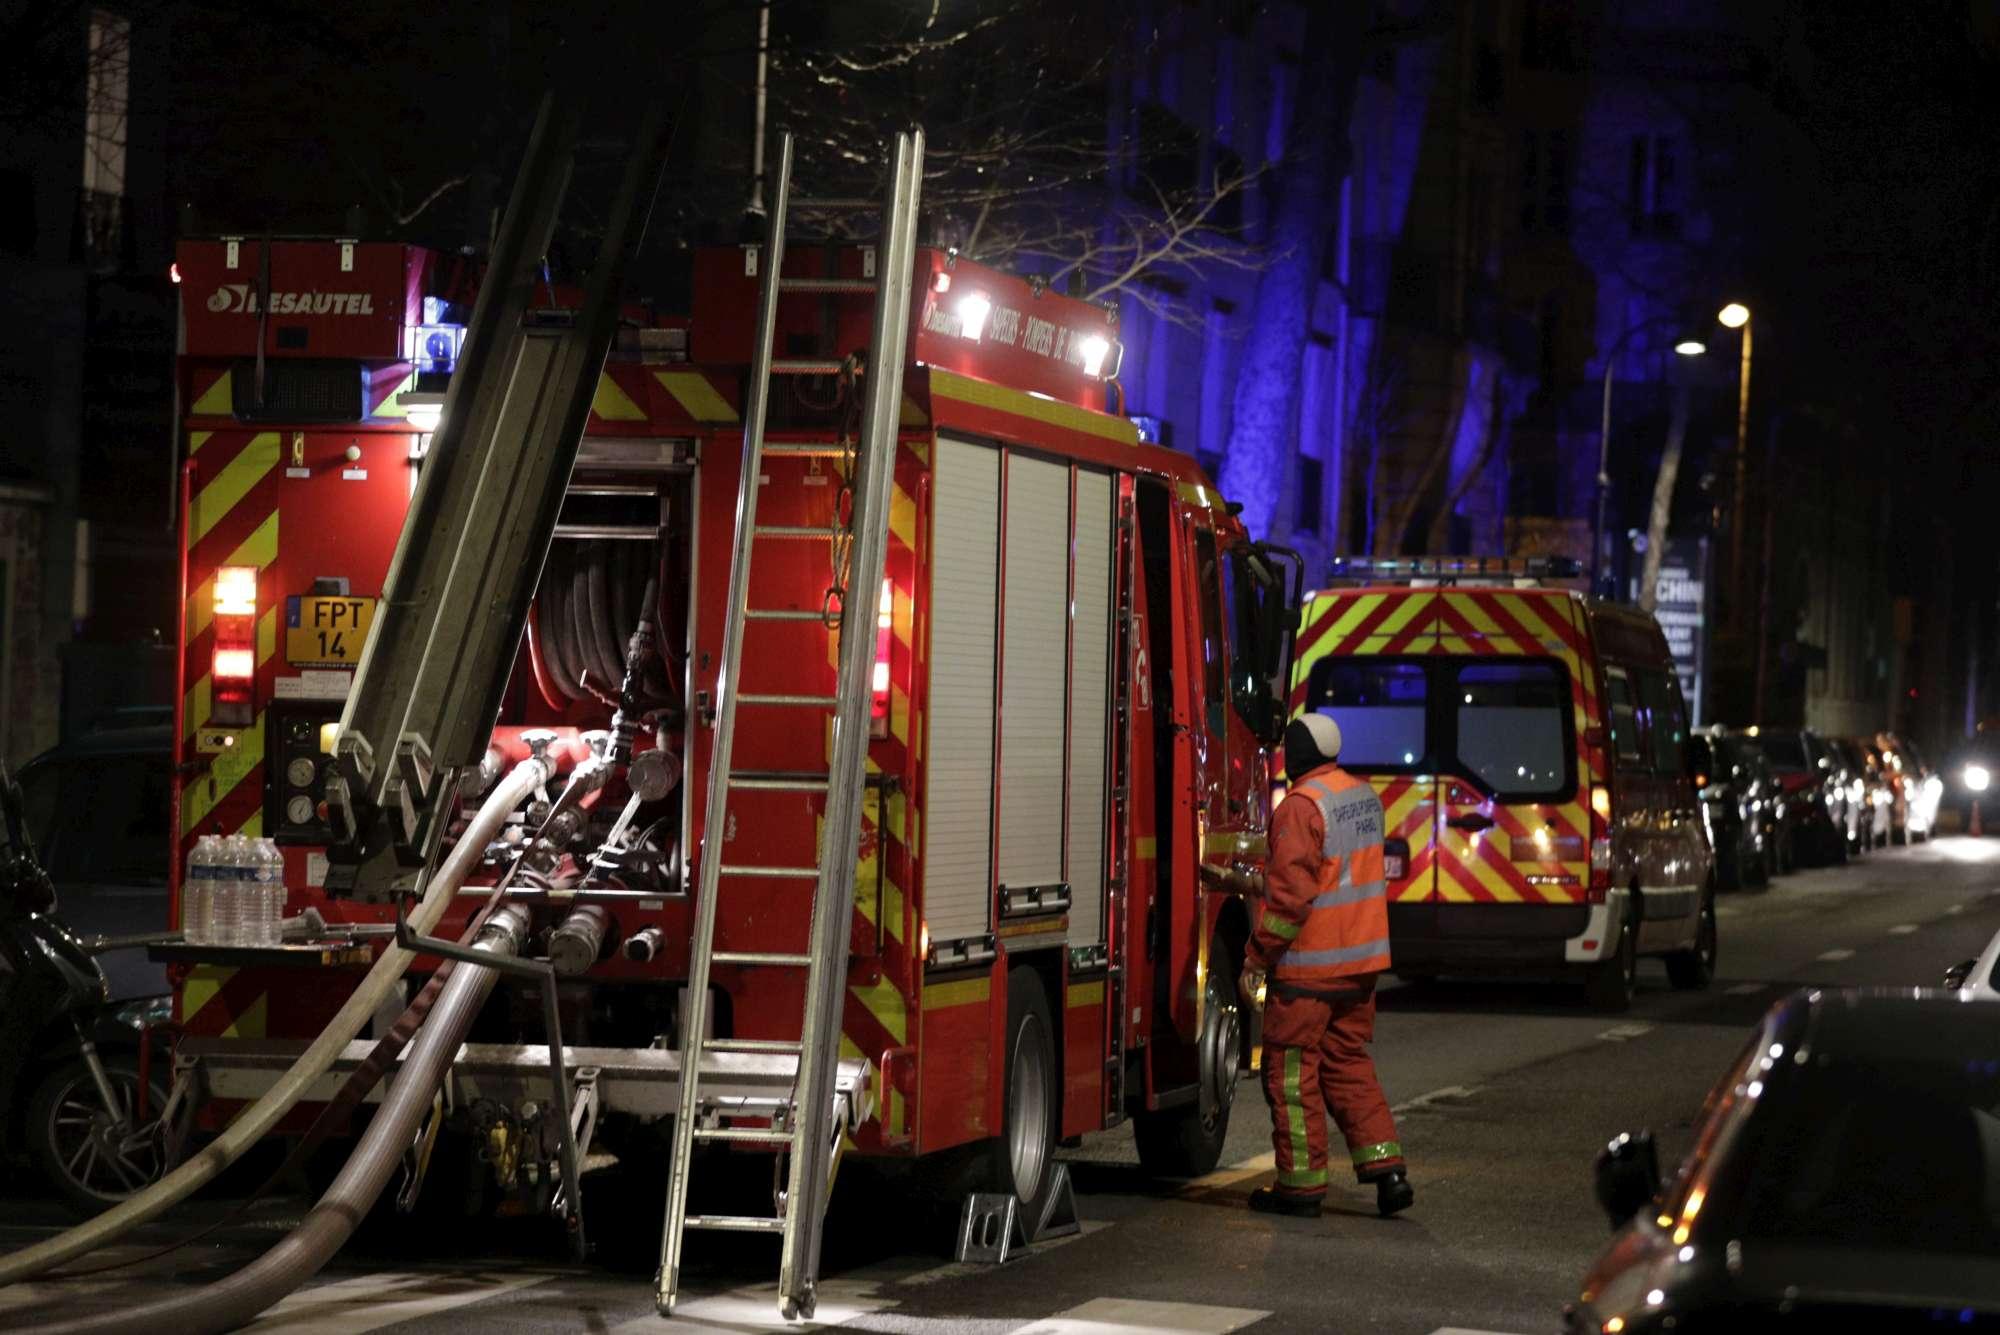 Parigi, palazzo in fiamme nella notte: almeno 8 morti e 31 feriti, arrestata una donna